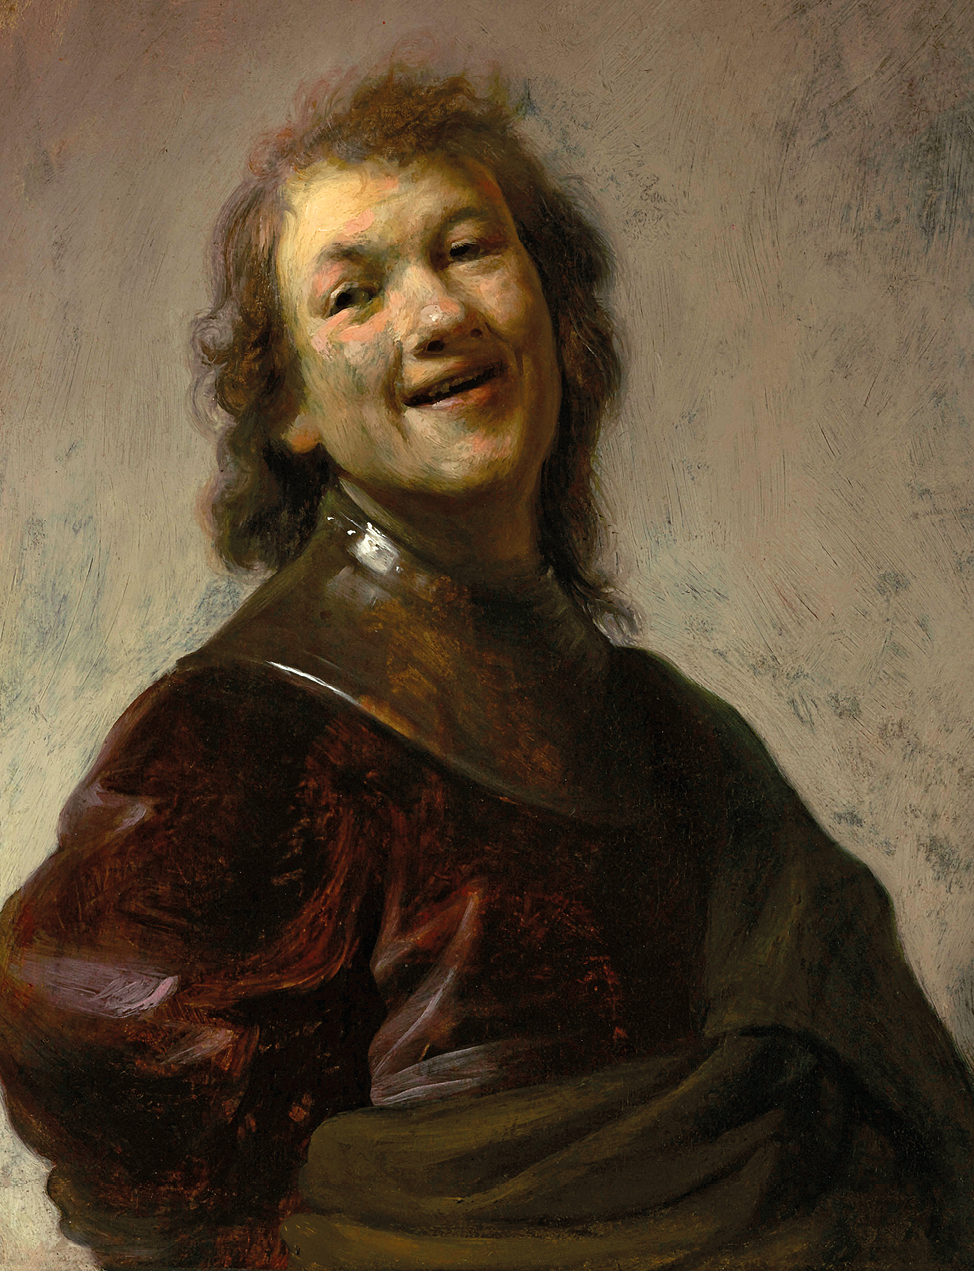 Pintura. Um dos autorretratos realísticos de Rembrandt van Rijn. Em tons escuros de marrom e bege, destaque para um homem em plano médio de cabelo liso na altura do pescoço, de sobrancelhas finas, nariz e lábios pequenos; ele está de frente com o rosto inclinado para o lado e sorrindo.